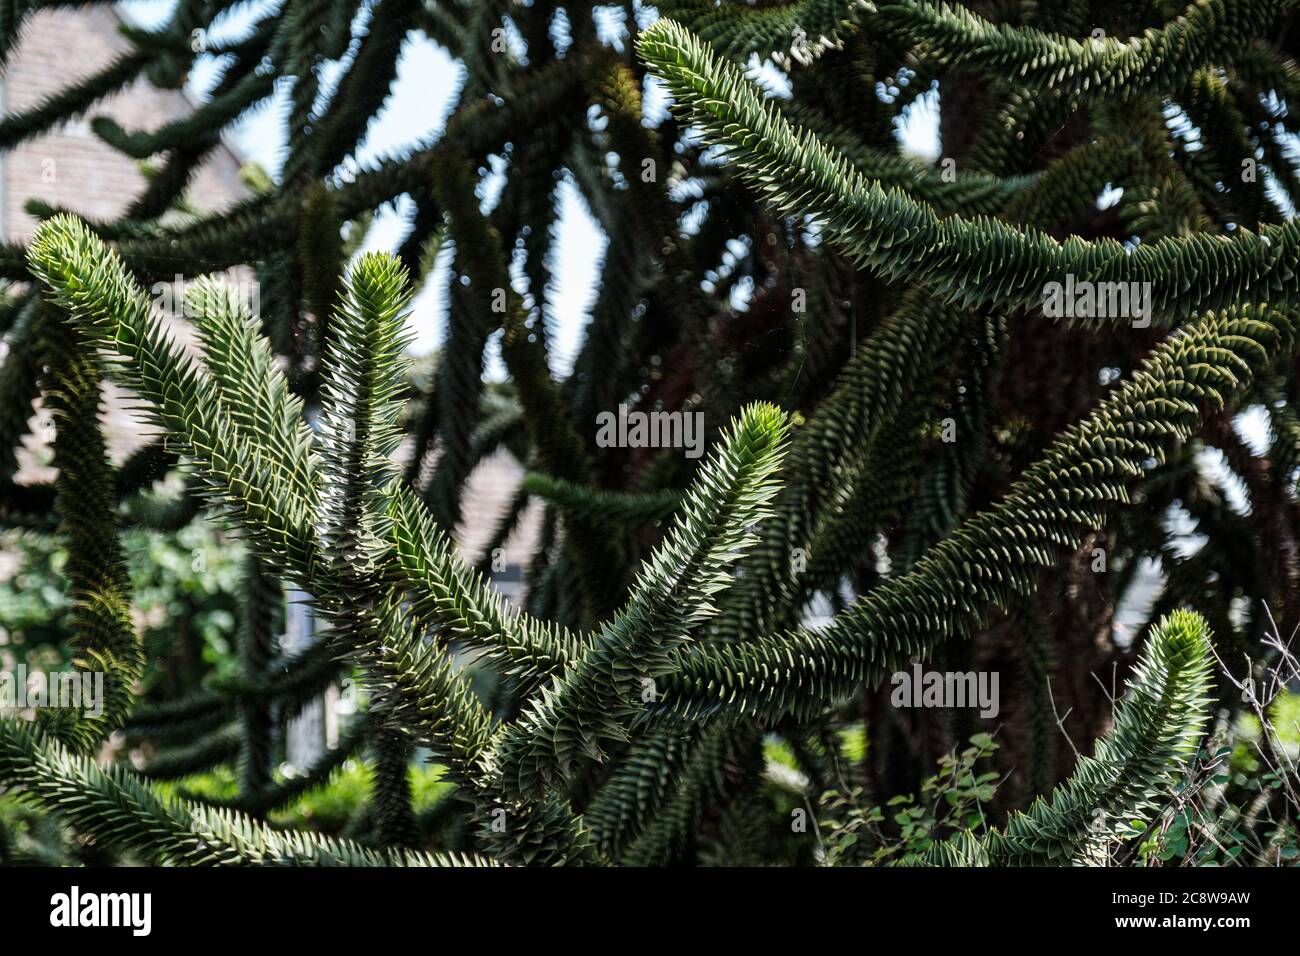 Chilean araucaria green fir tree Stock Photo